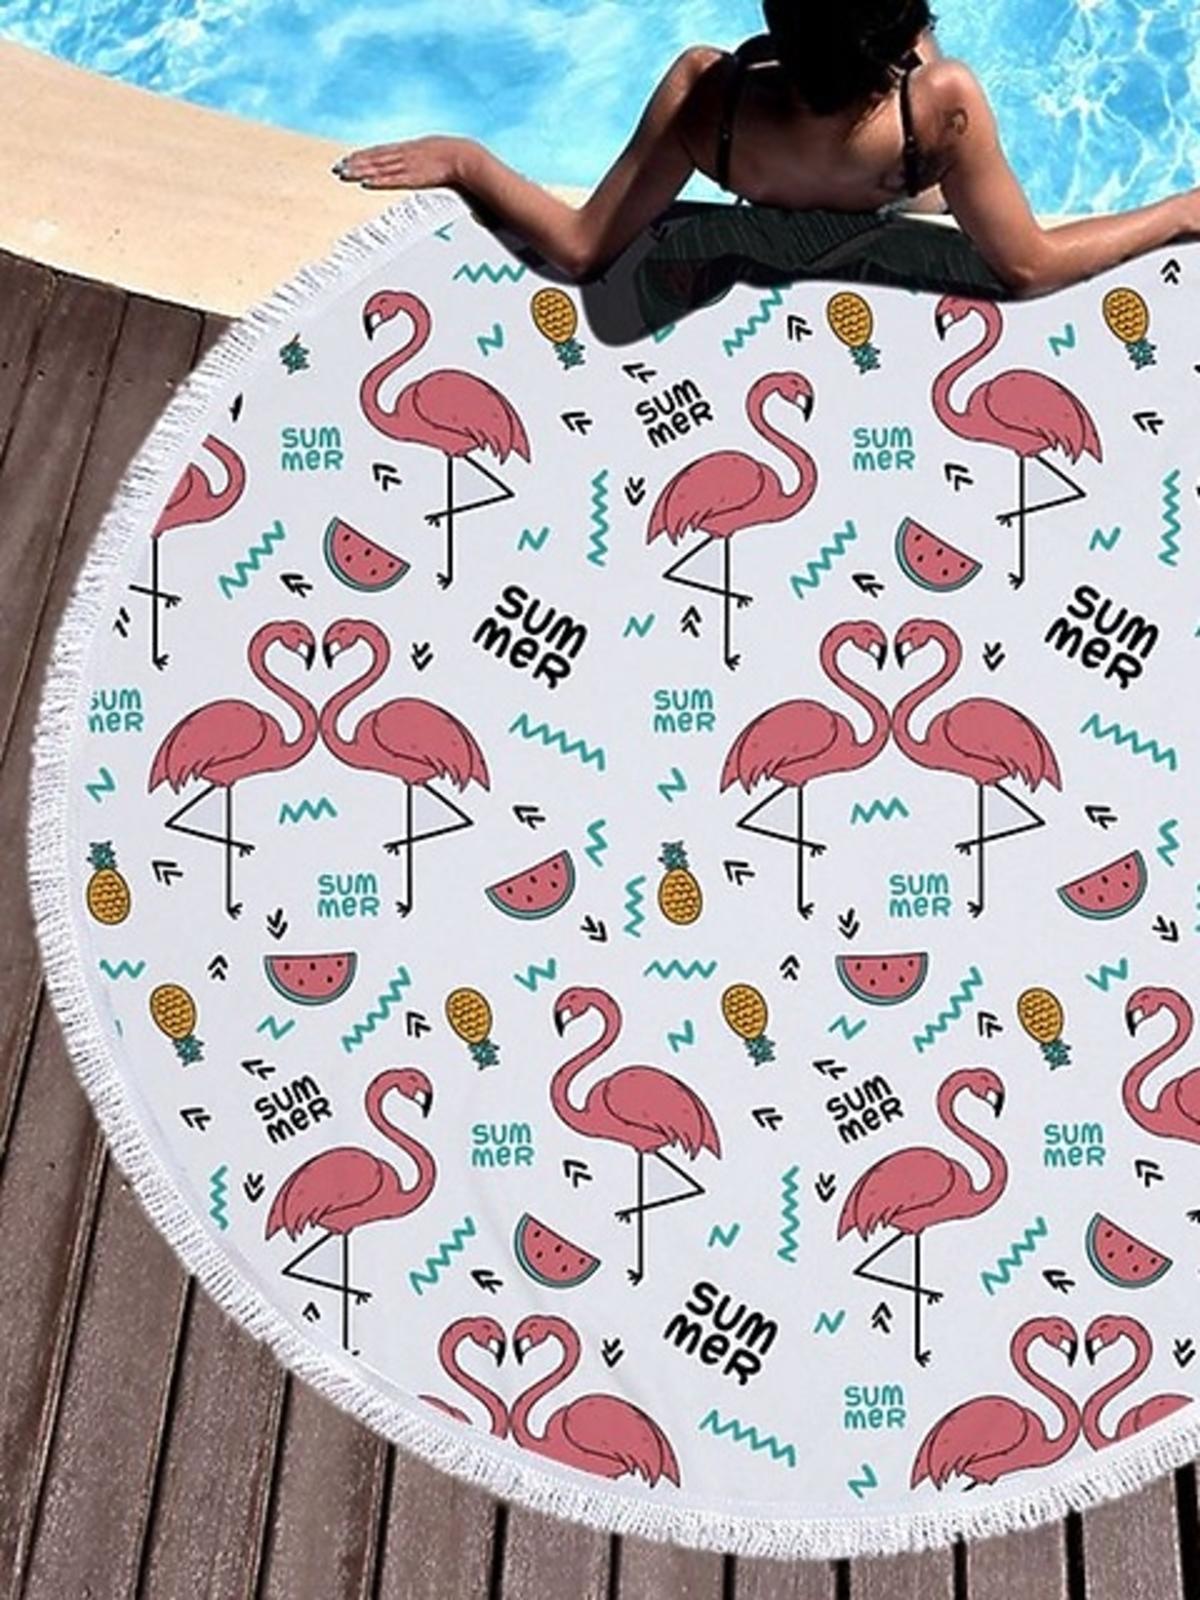 koc plażowy ręcznik we flamingi 150 cm średnicy najmodniejszy aliexpress.pl.jpg